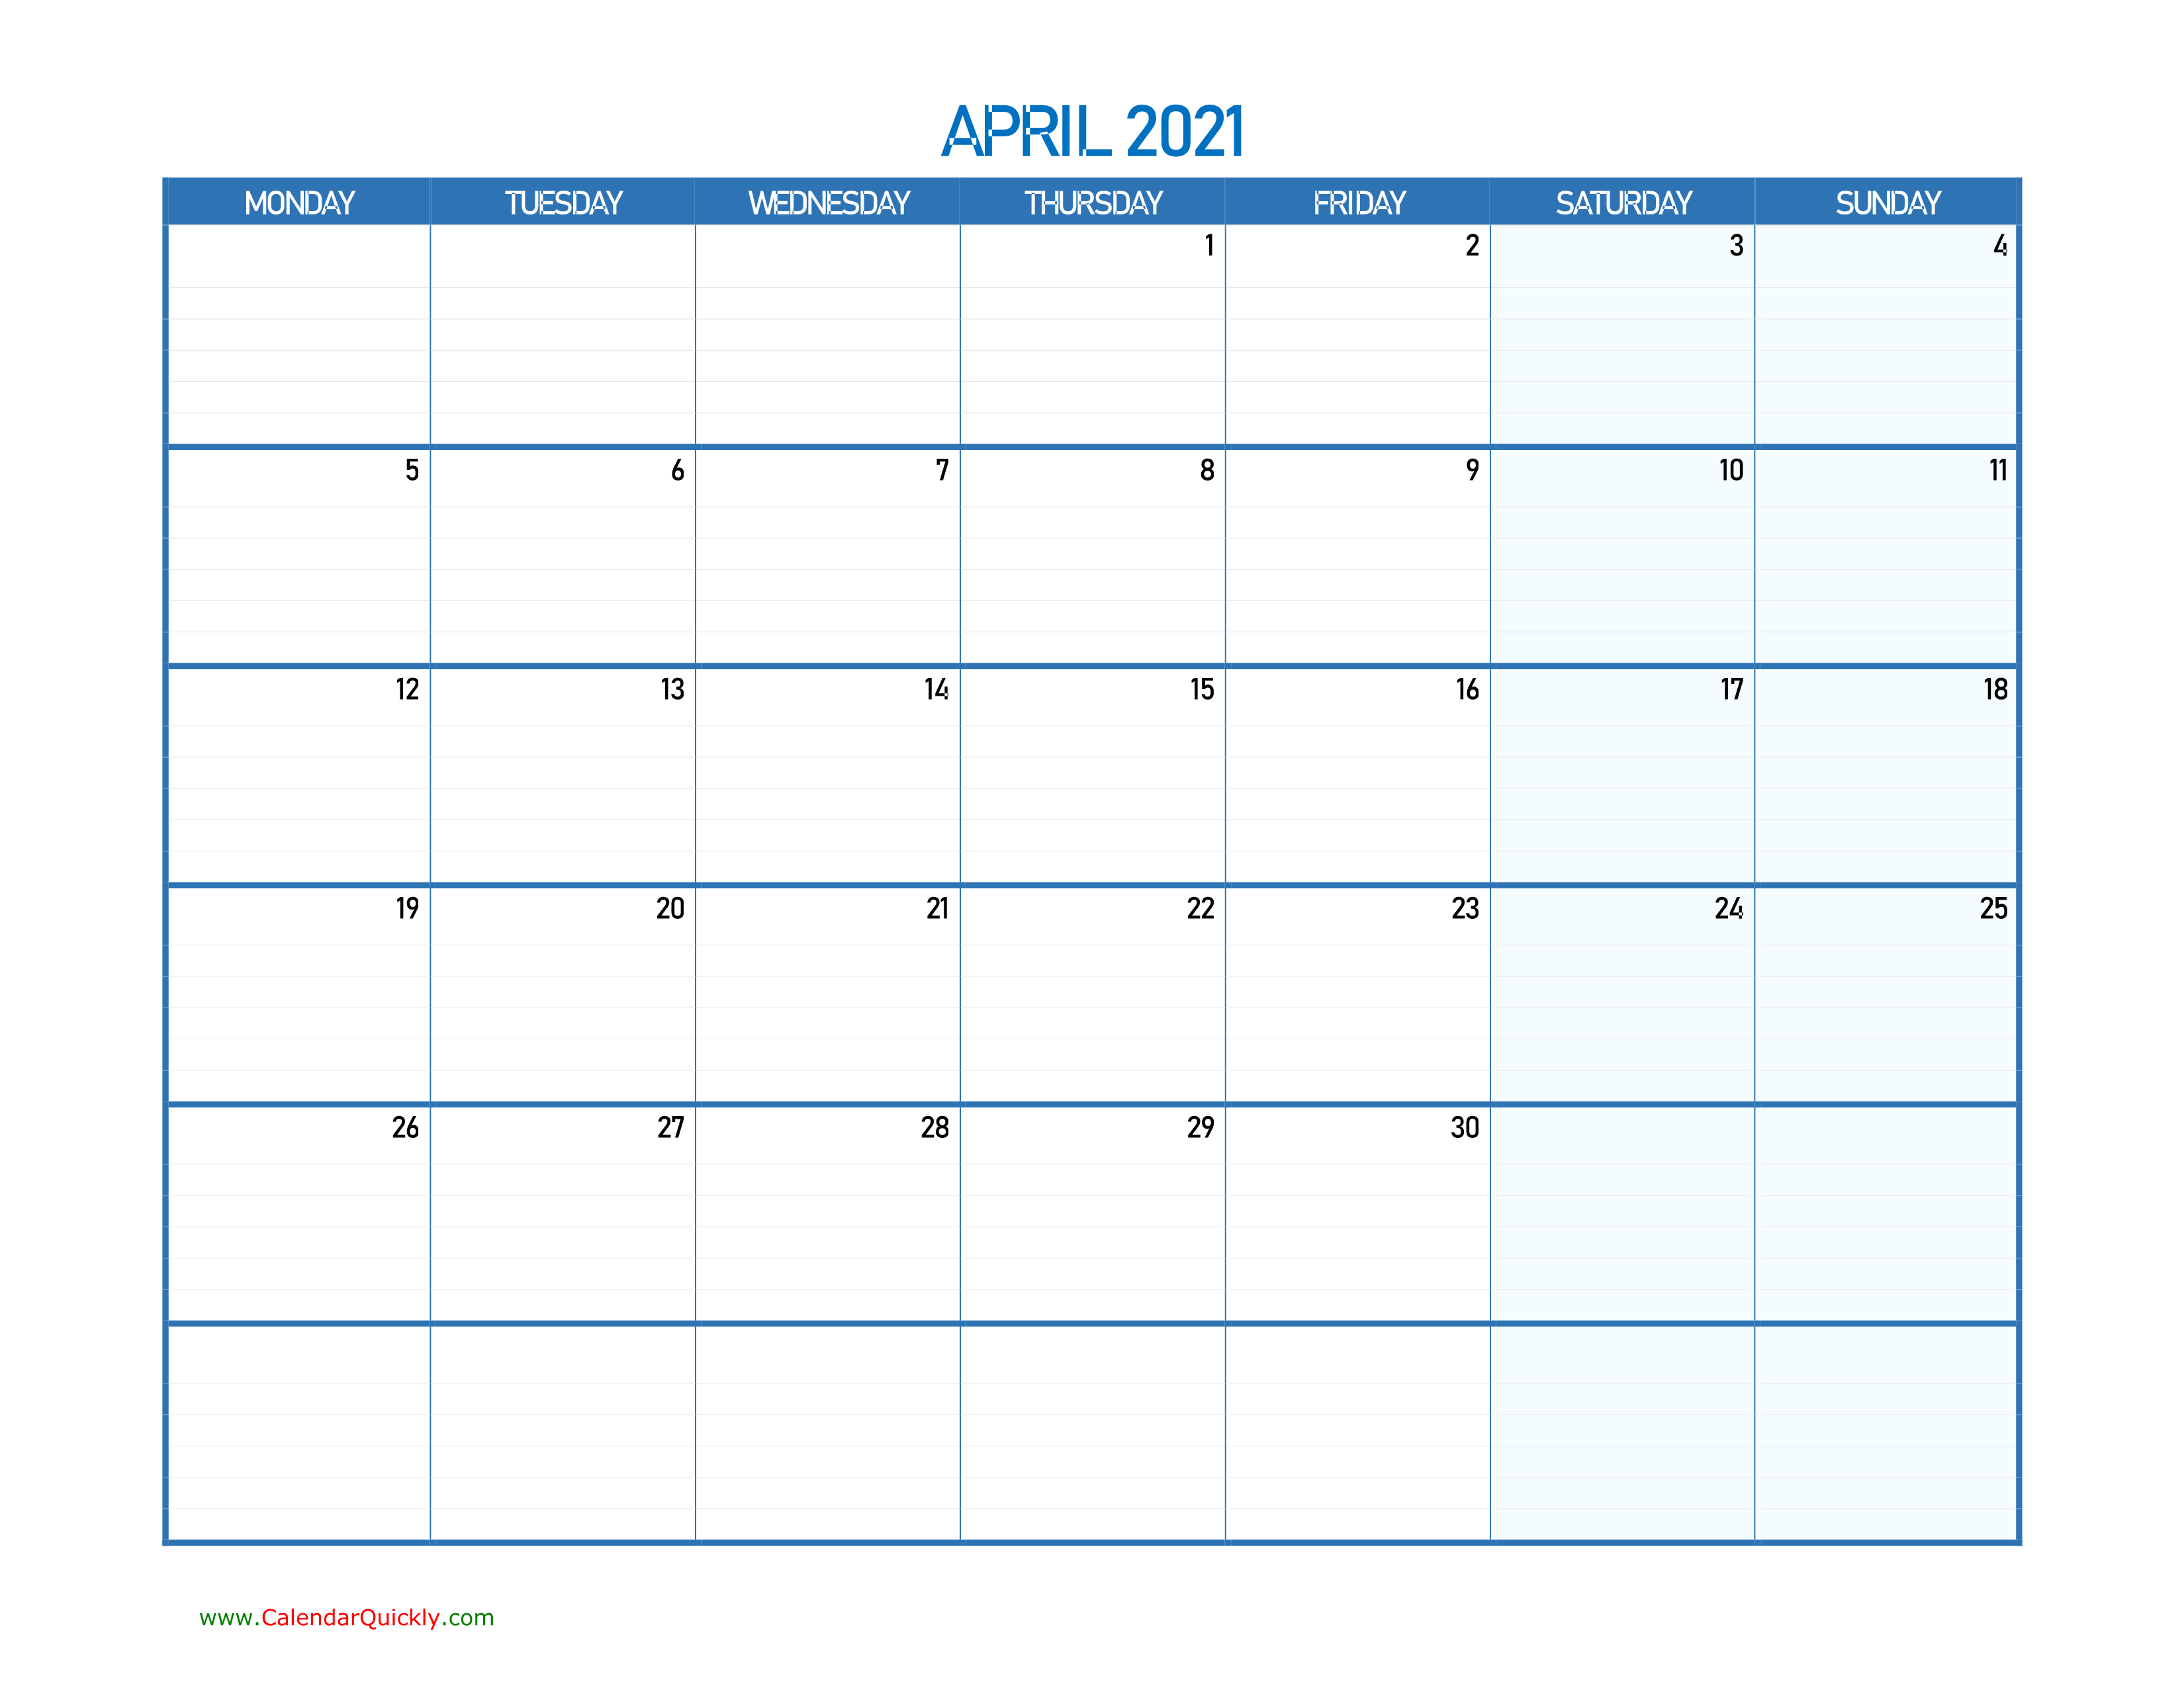 April Monday 2021 Blank Calendar Calendar Quickly